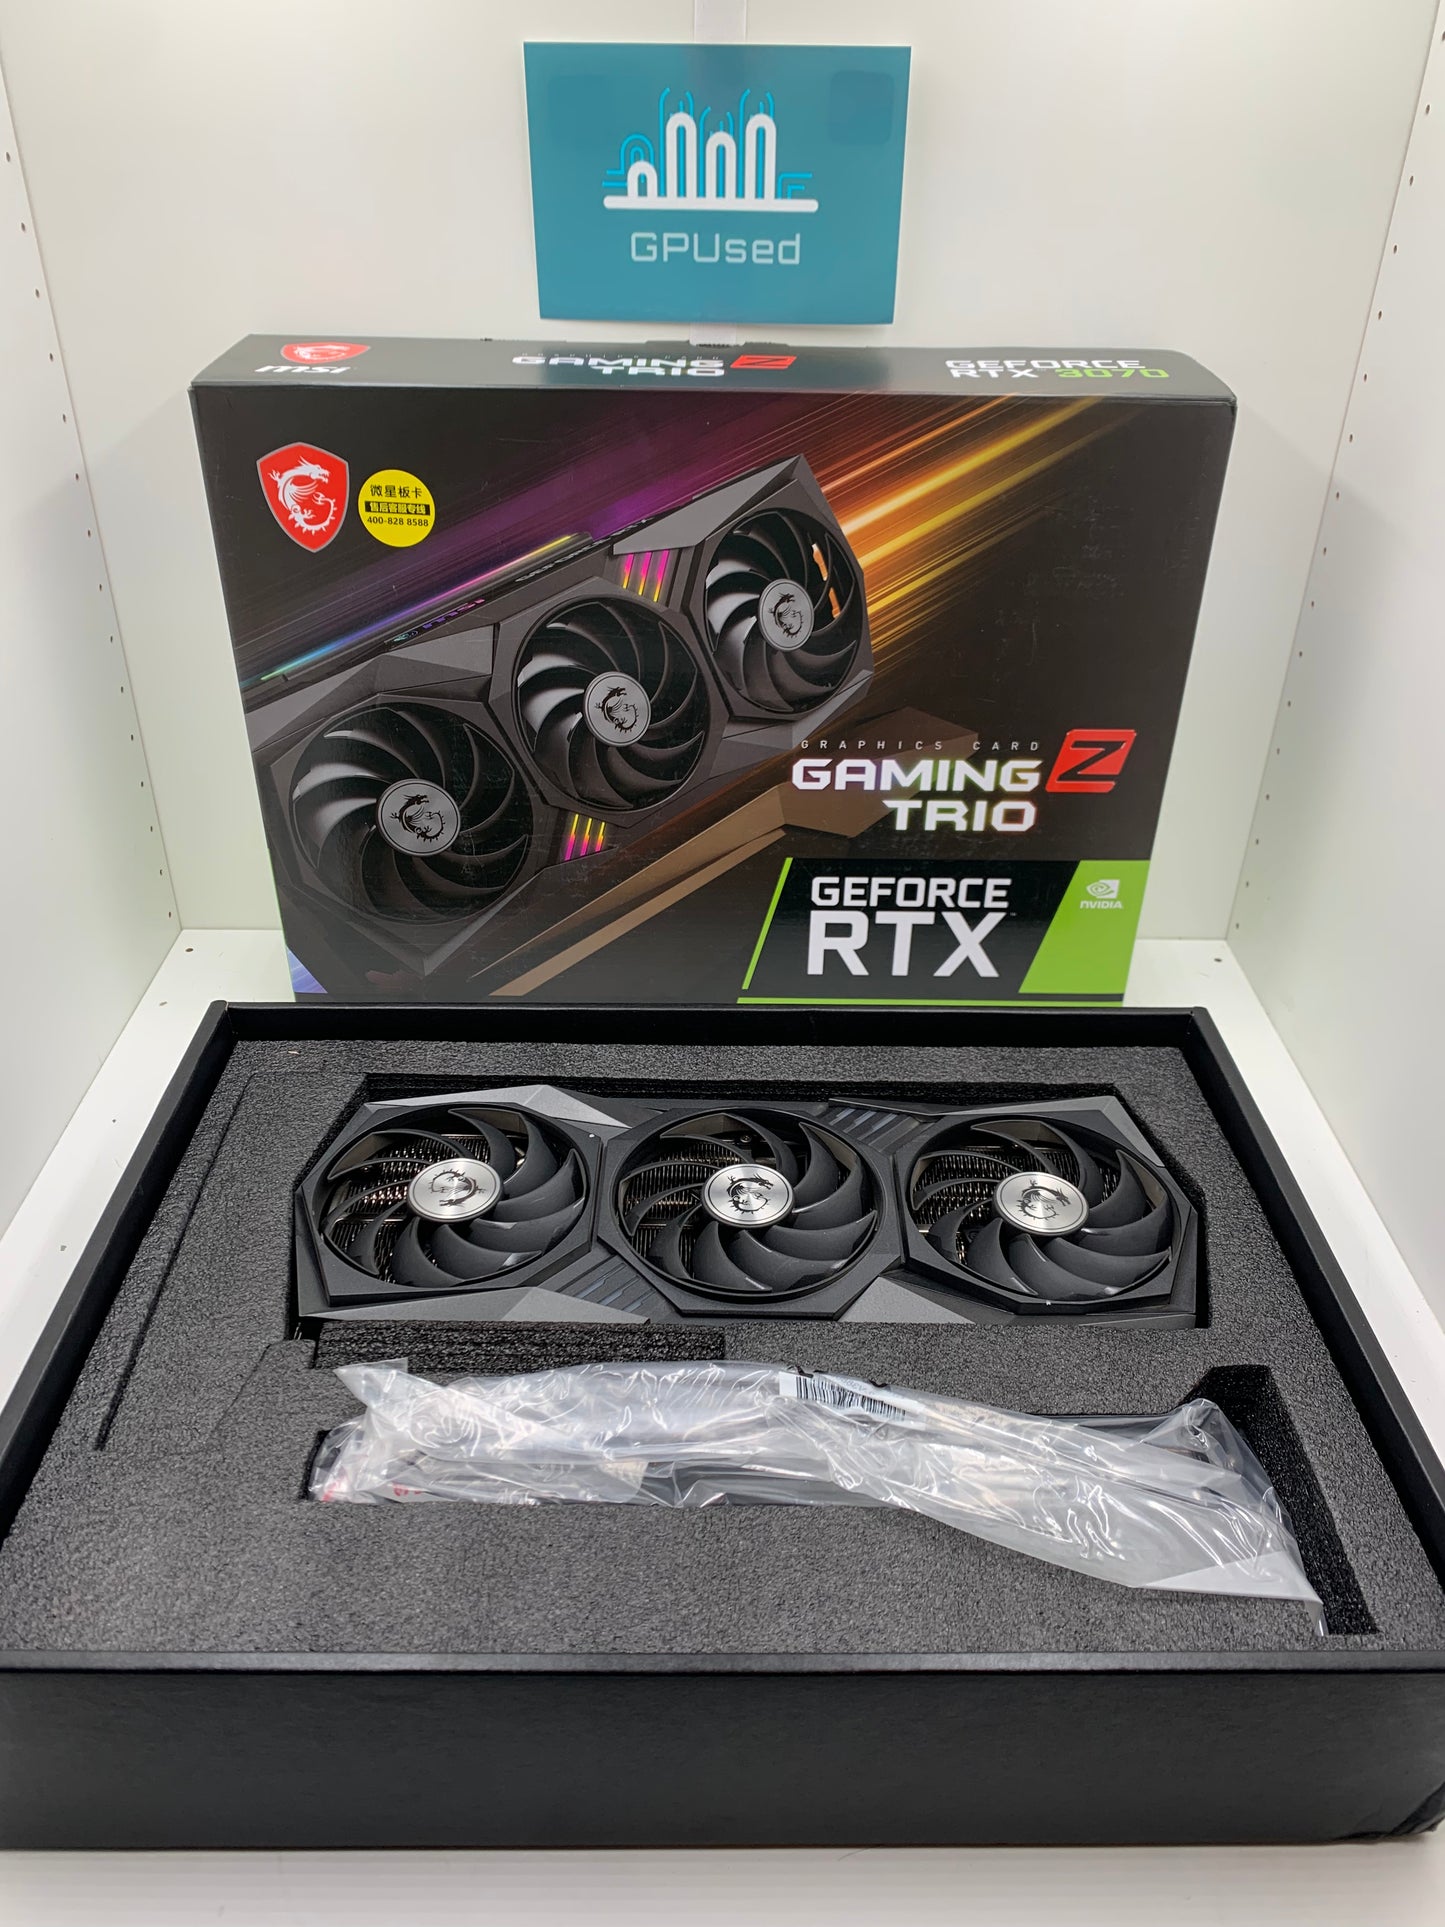 MSI Nvidia GeForce RTX 3070 Gaming Z Trio 8GB GDDR6 - Was £339.99 - A